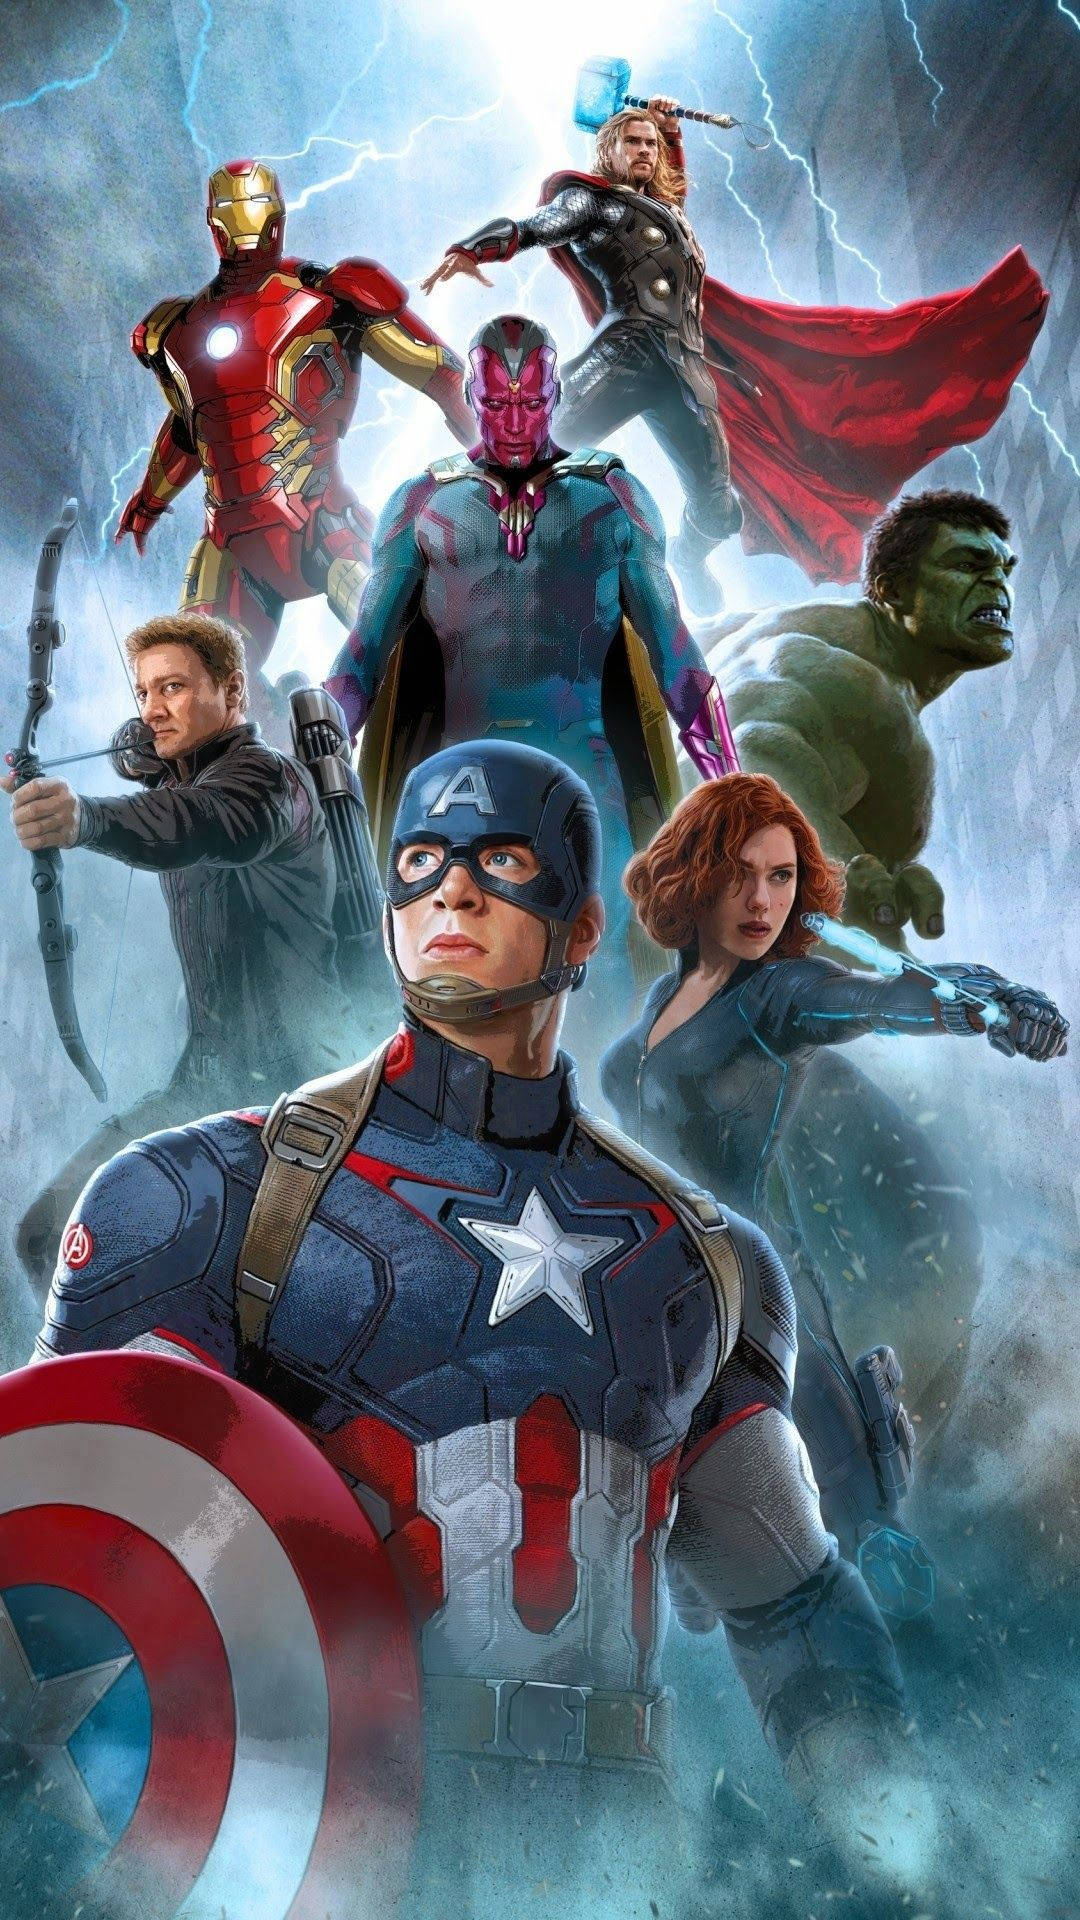 Marvel's legendary super team, the Avengers, assemble! Wallpaper